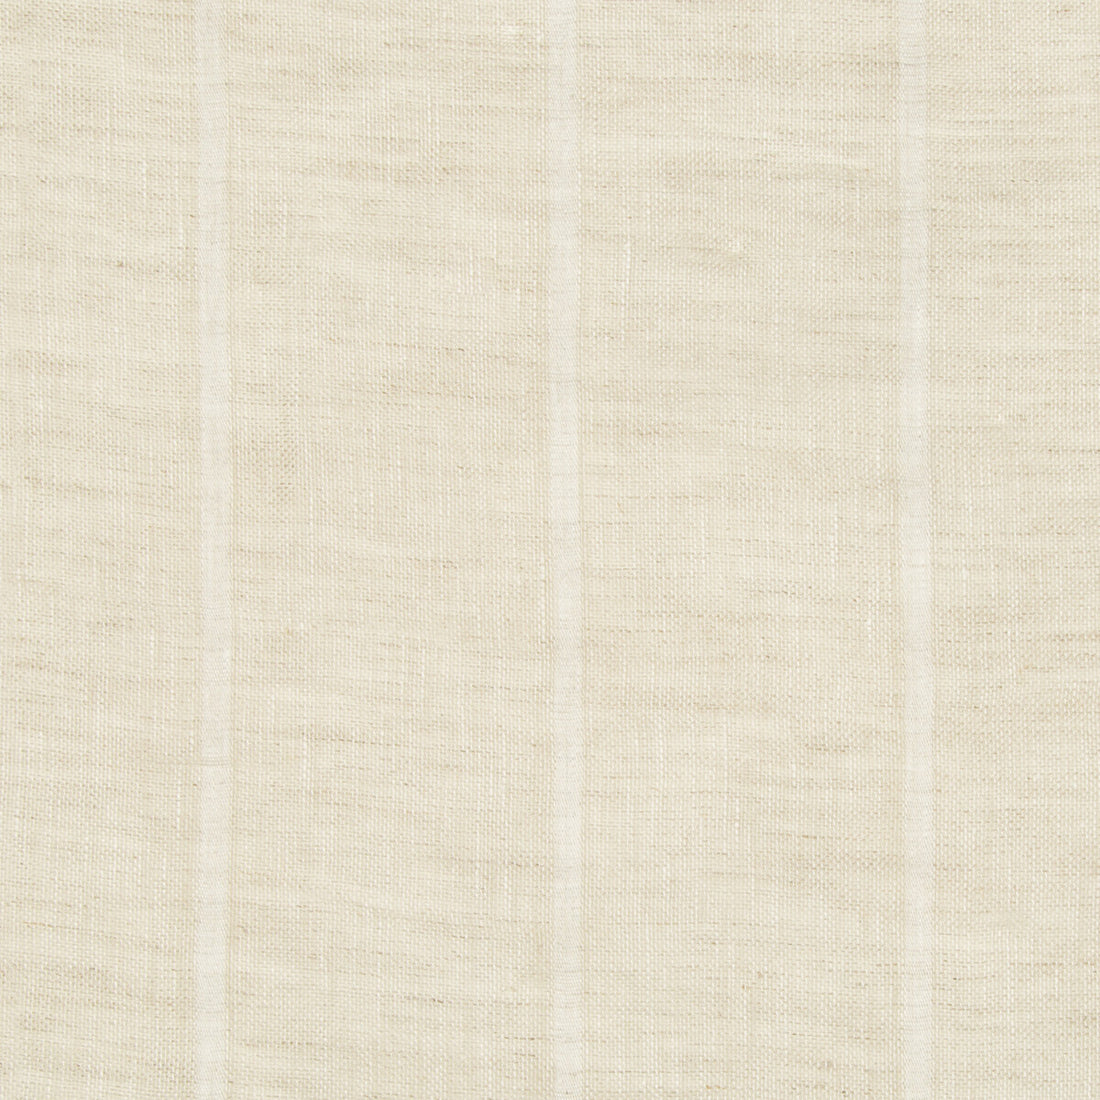 Kravet Basics fabric in 3586-16 color - pattern 3586.16.0 - by Kravet Basics